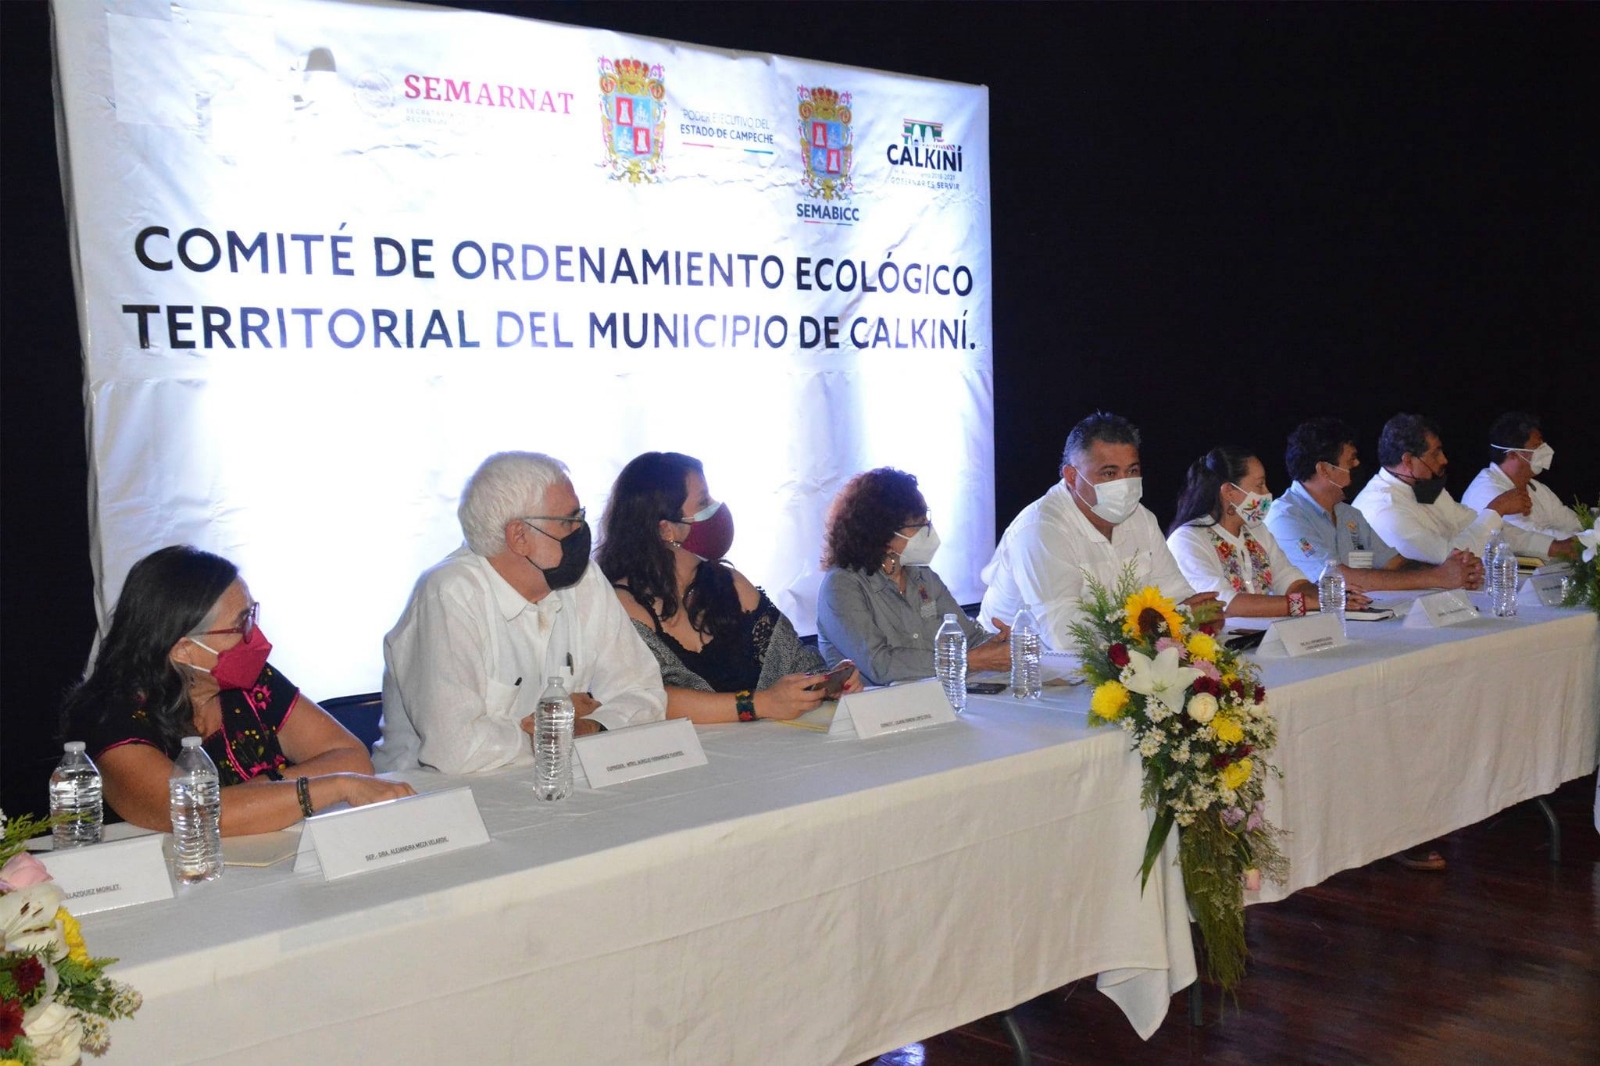 Semarnat crea comité ecológico para el ordenamiento urbano en Calkiní, Campeche